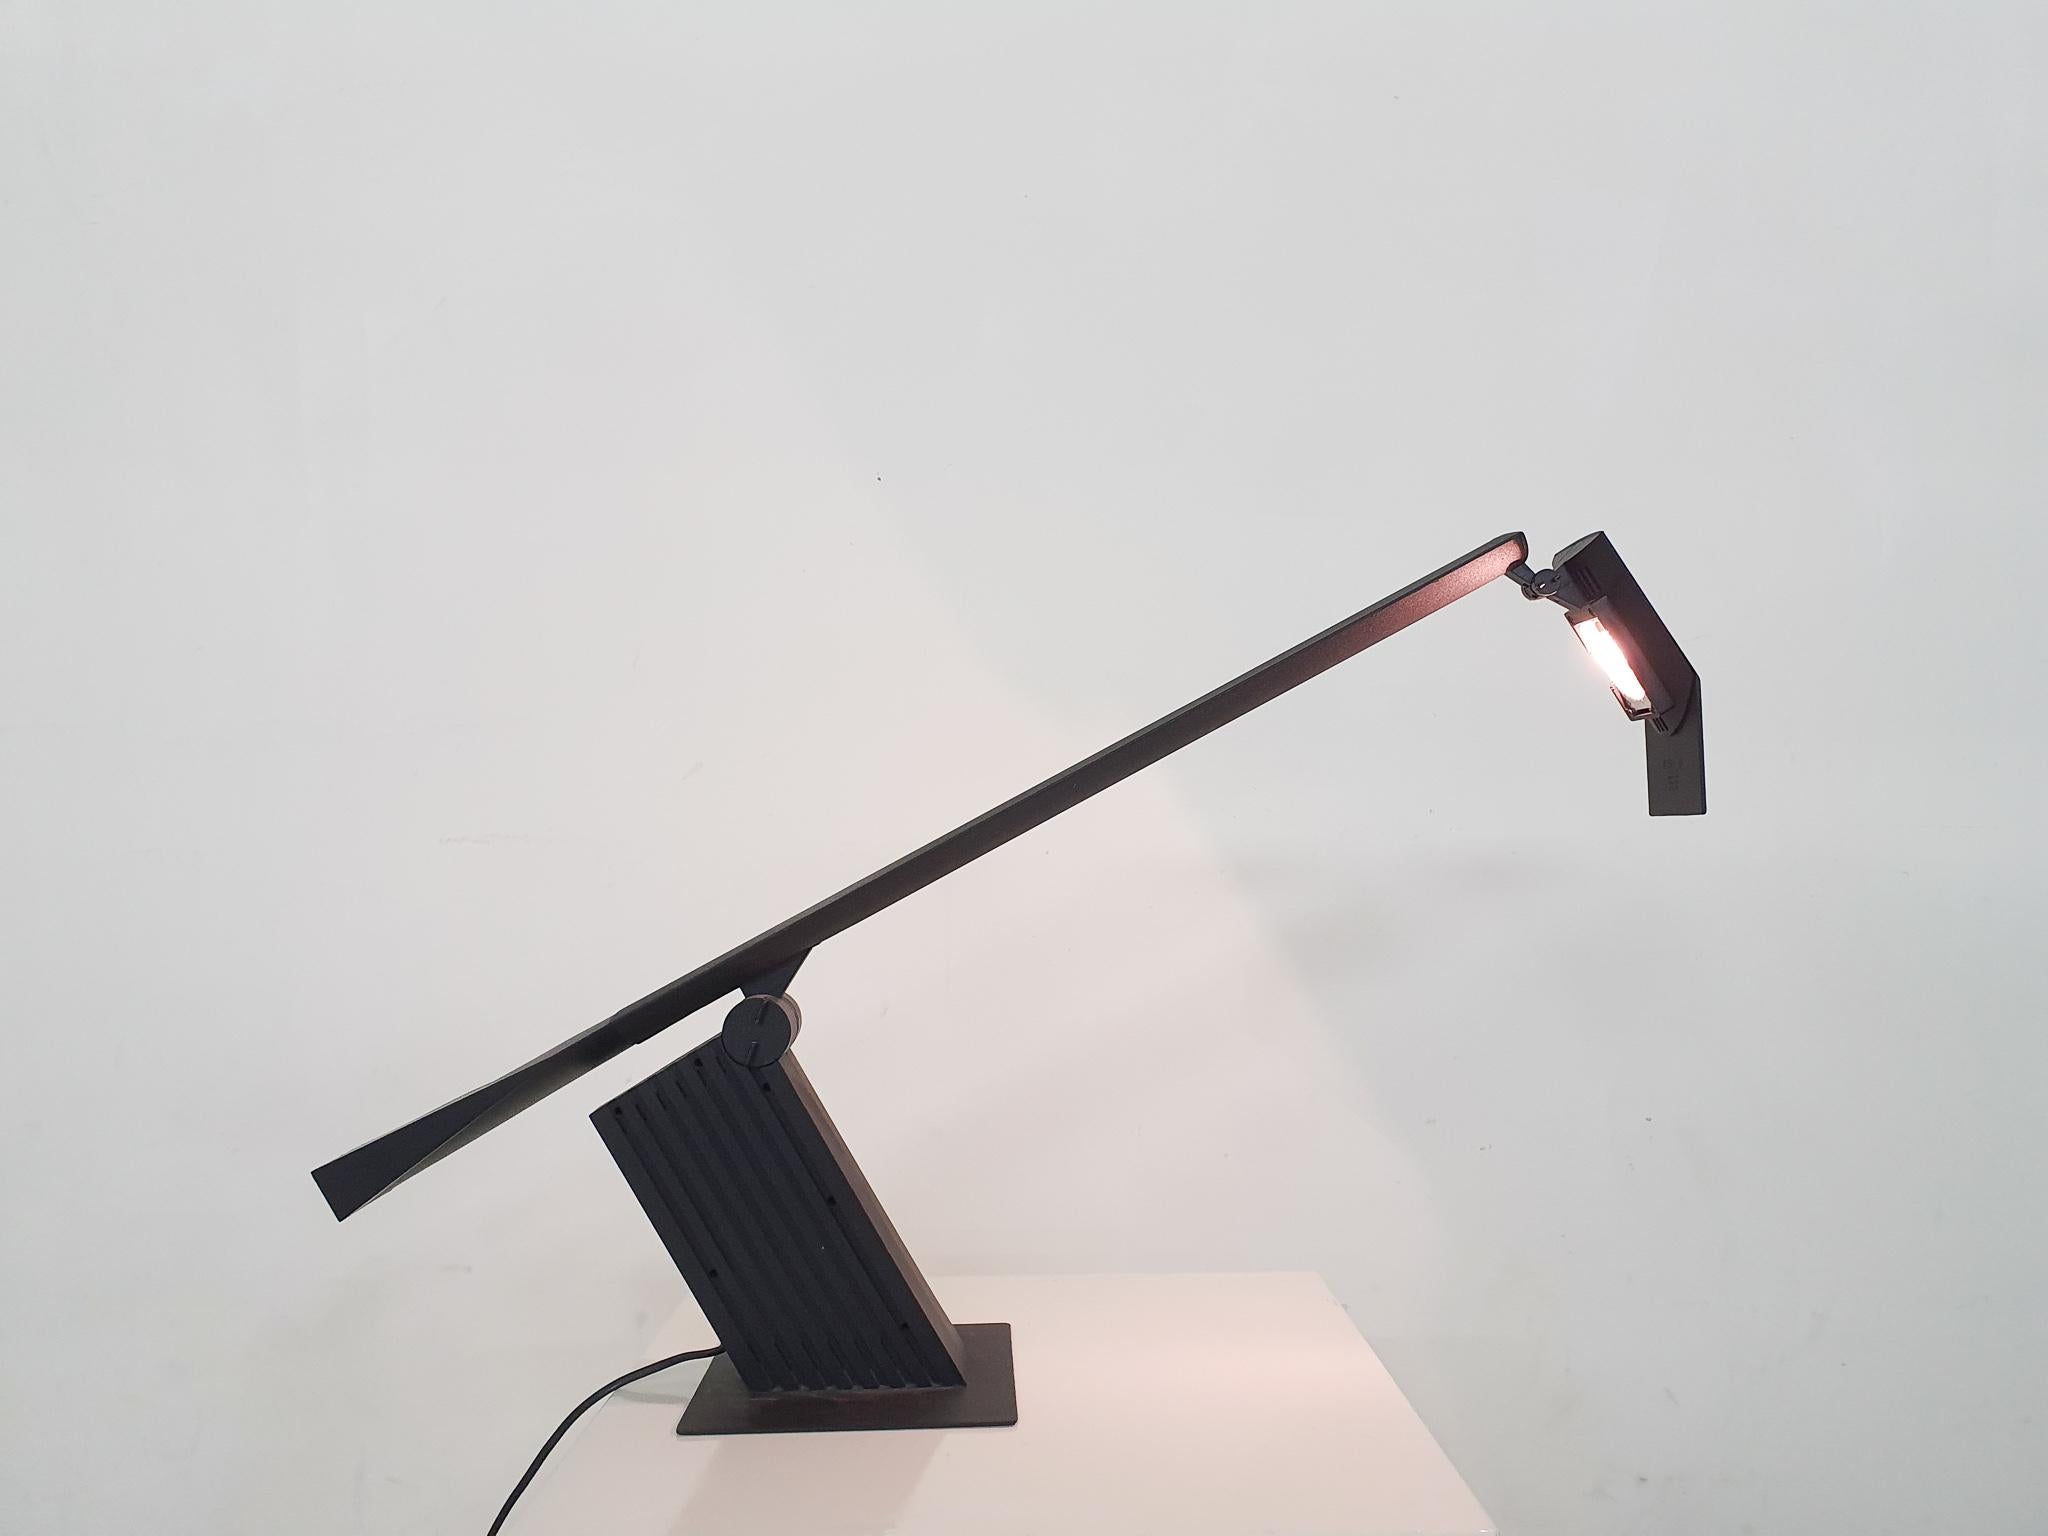 Verstellbare Schreibtischleuchte aus schwarzem Kunststoff und Metall, entworfen von Hans von Klier für Bilumen.
Die Leuchte verwendet eine Halogenlampe. Auf dem Kopf, neben der Halogenlampe, befindet sich ein Chip aus Kunststoff.